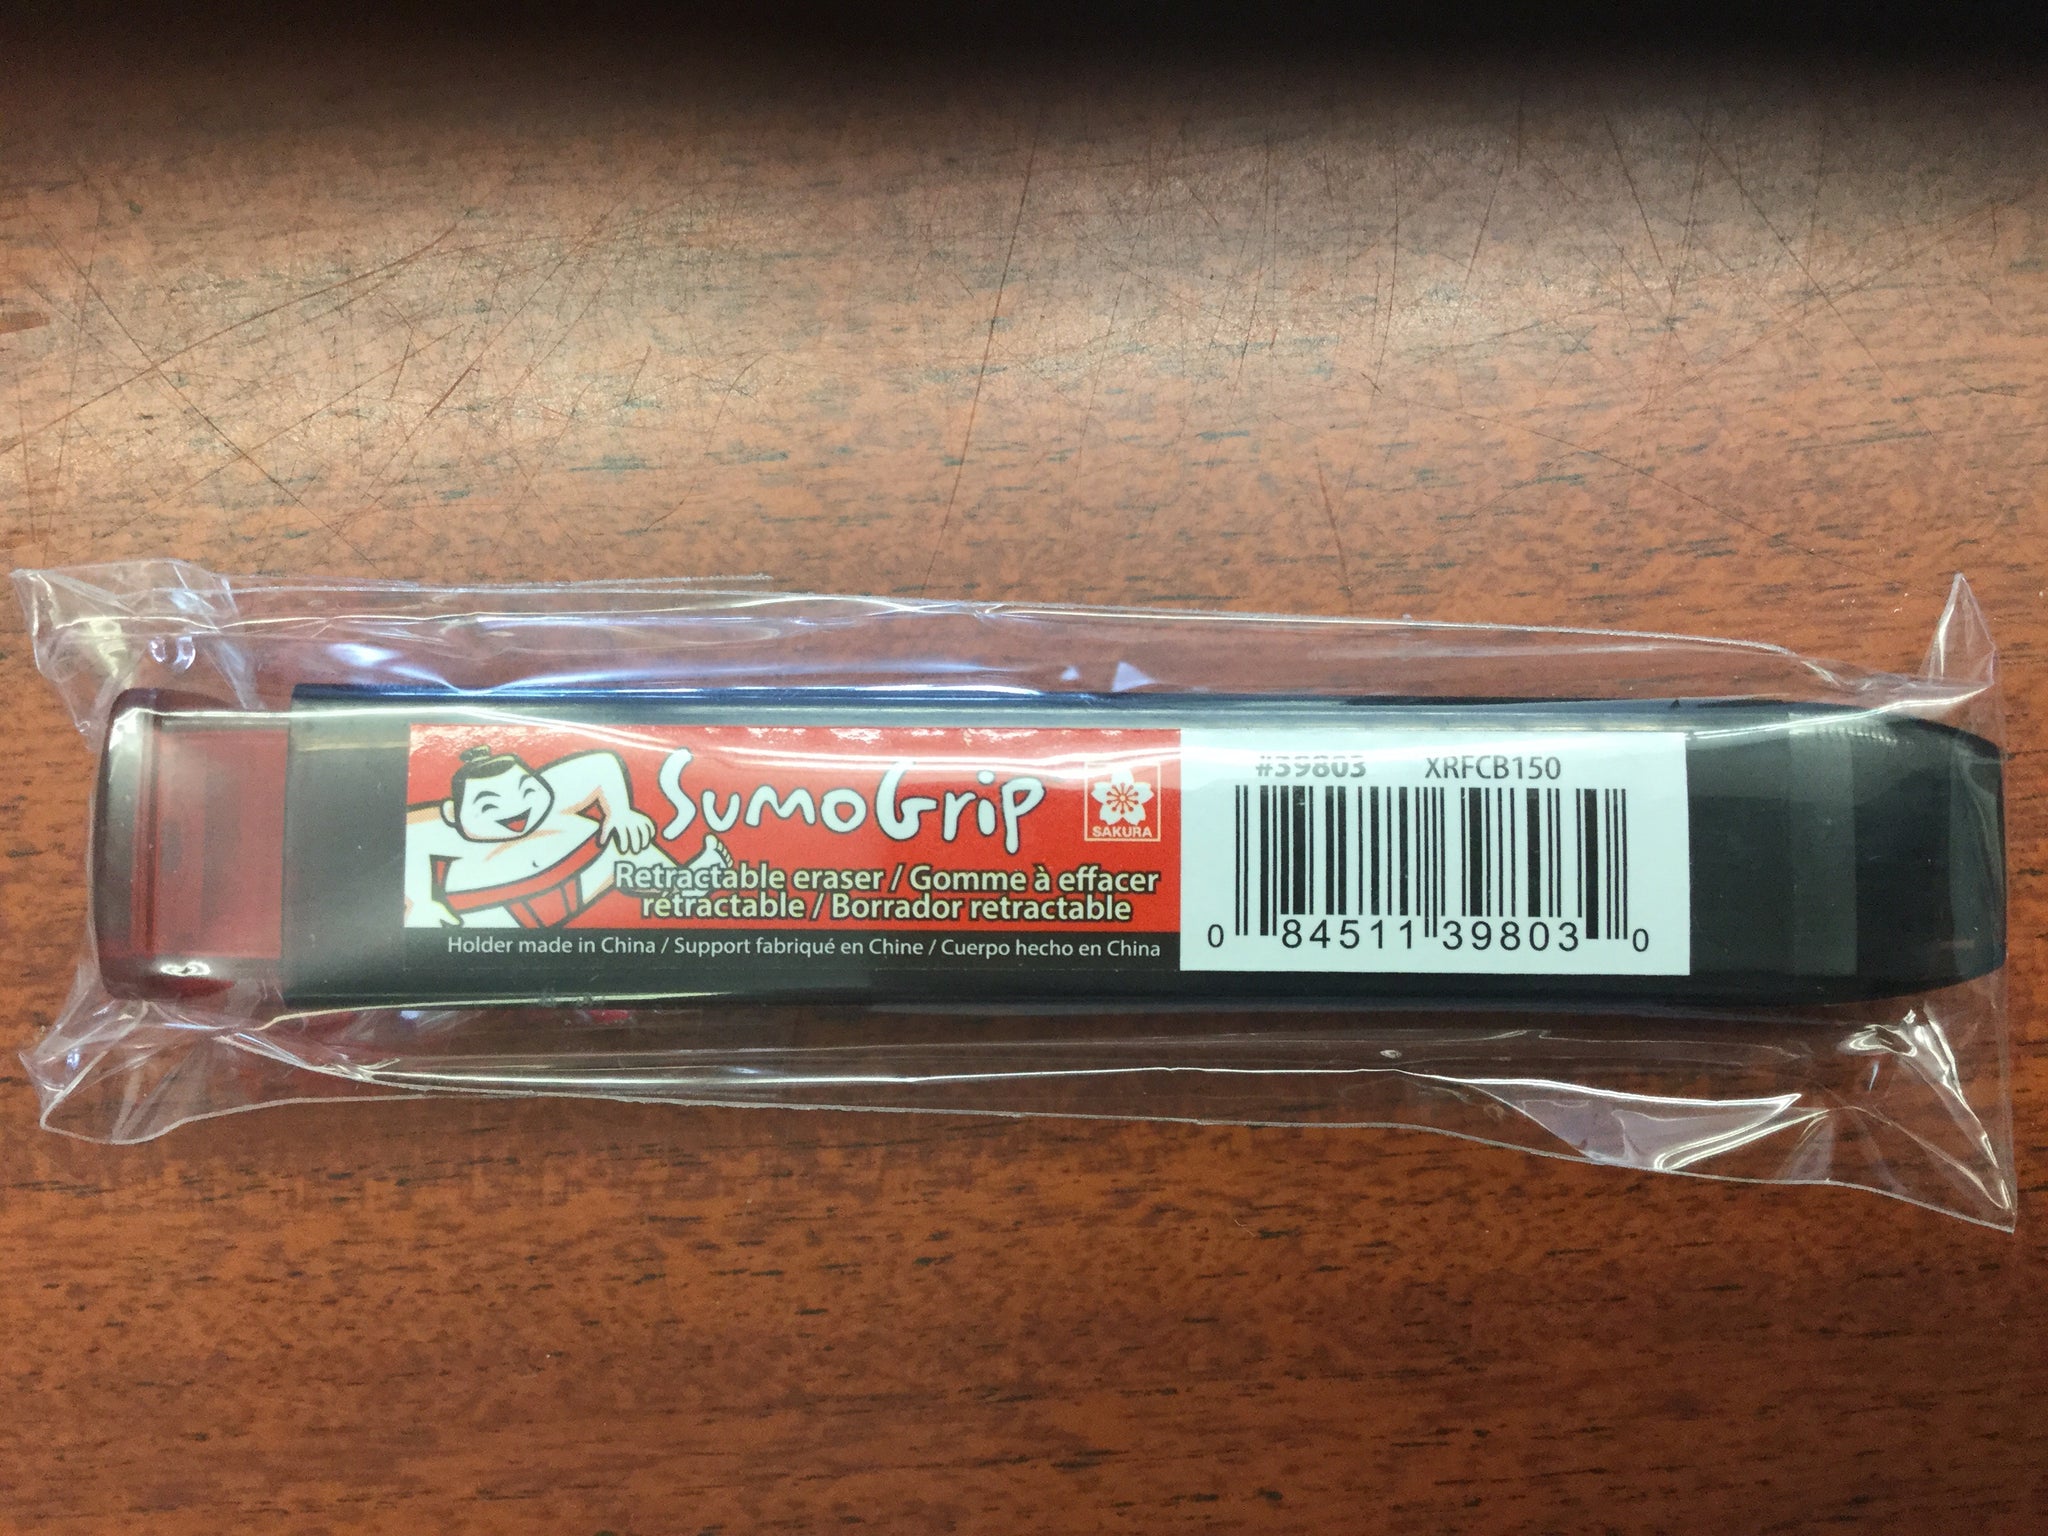  Sakura Sumo Grip Retractable Eraser